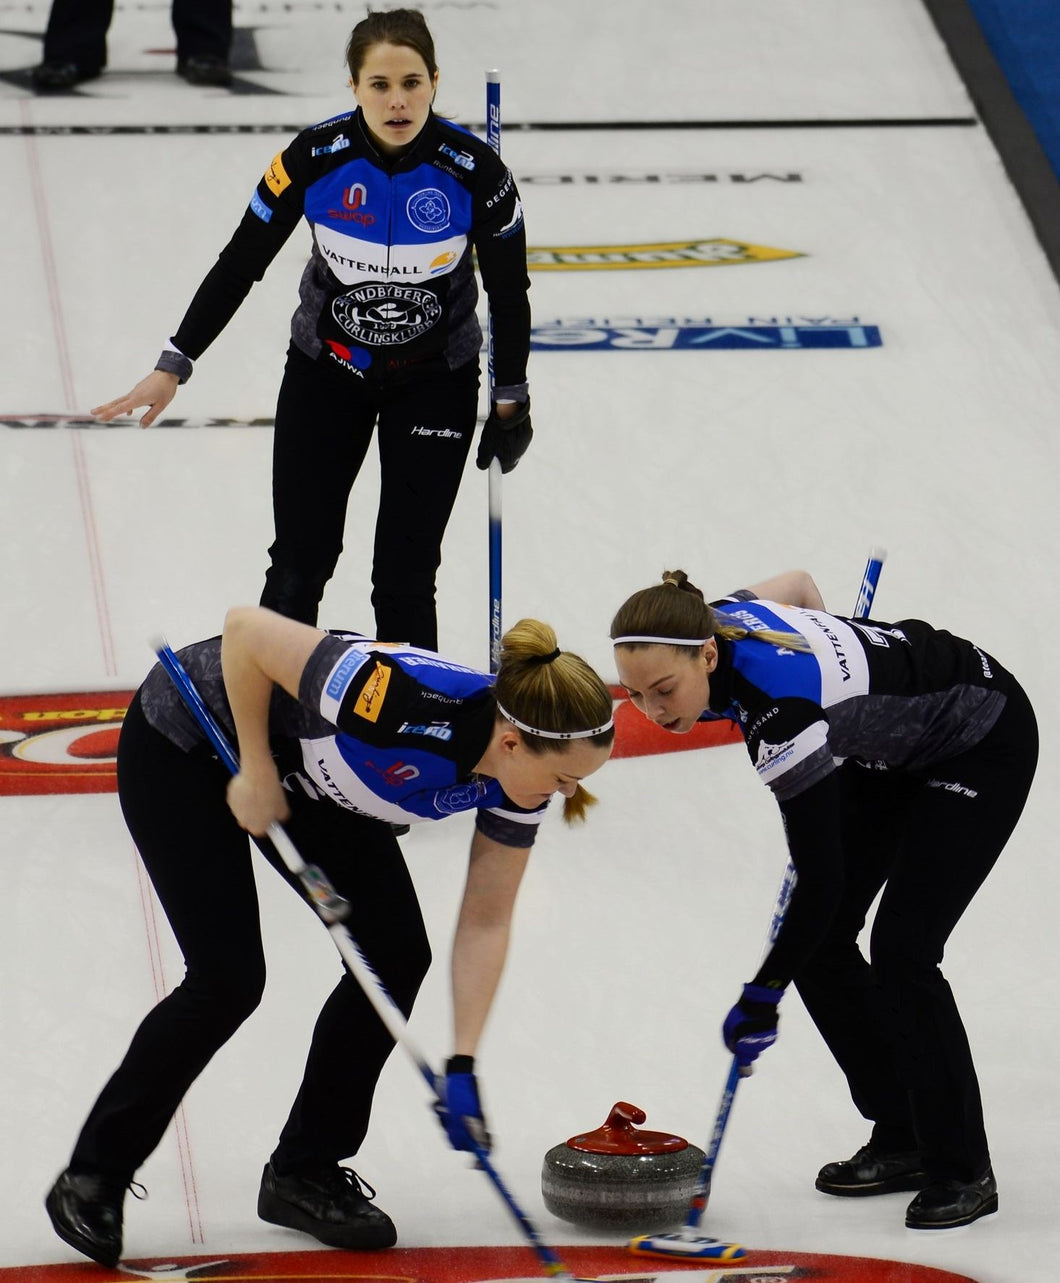 Women's Hardline Swedish Cut Yoga Curling Pants